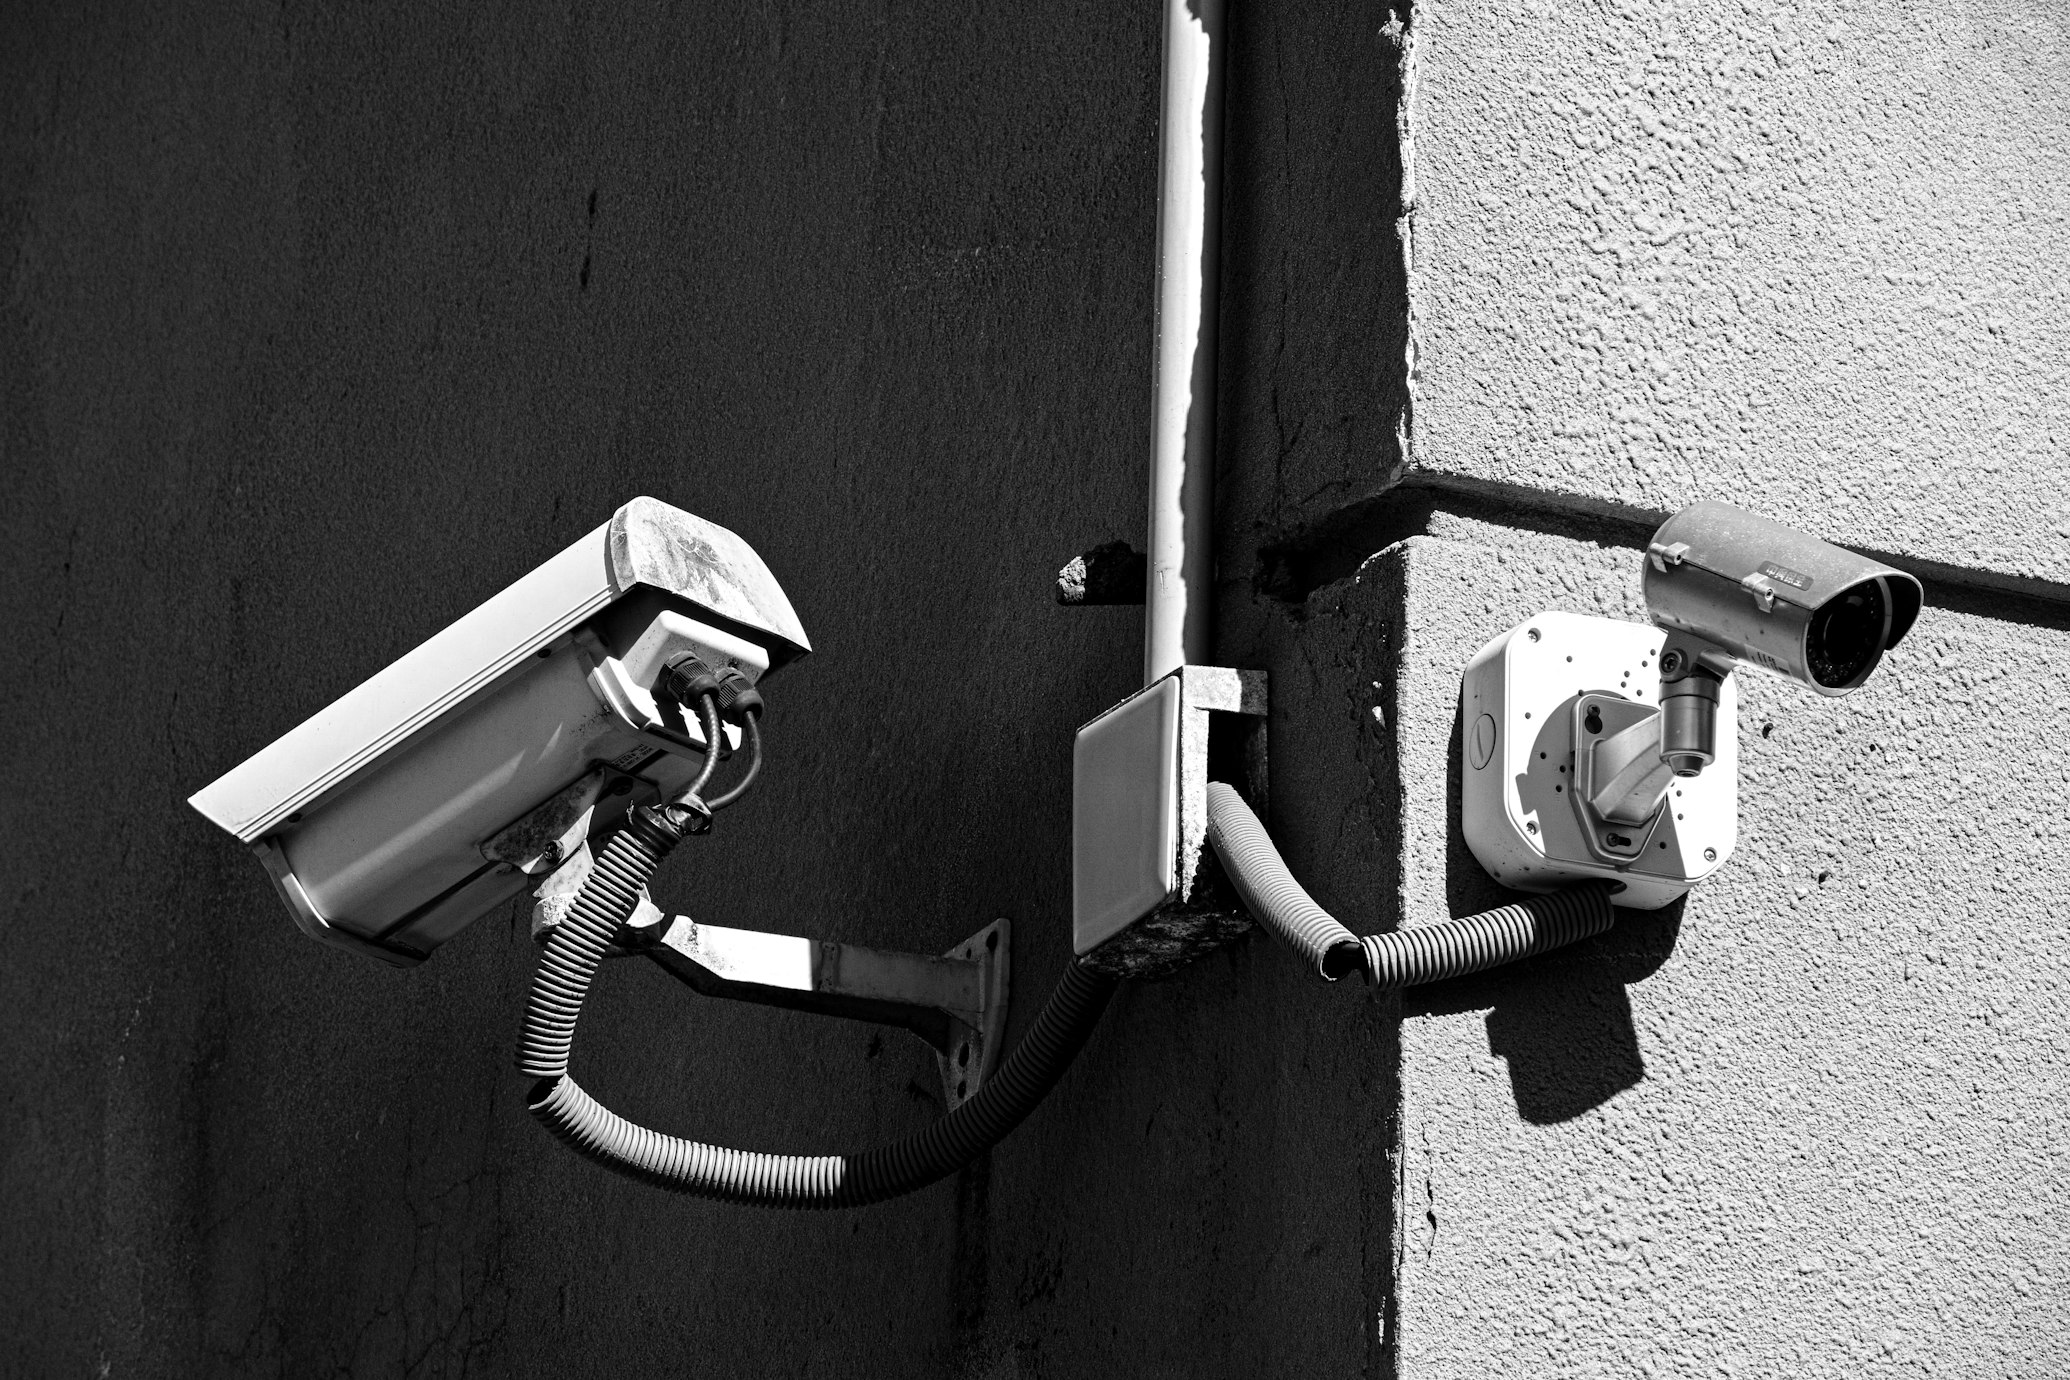 cámaras de seguridad
seguridad del hogar
sistemas de vigilancia